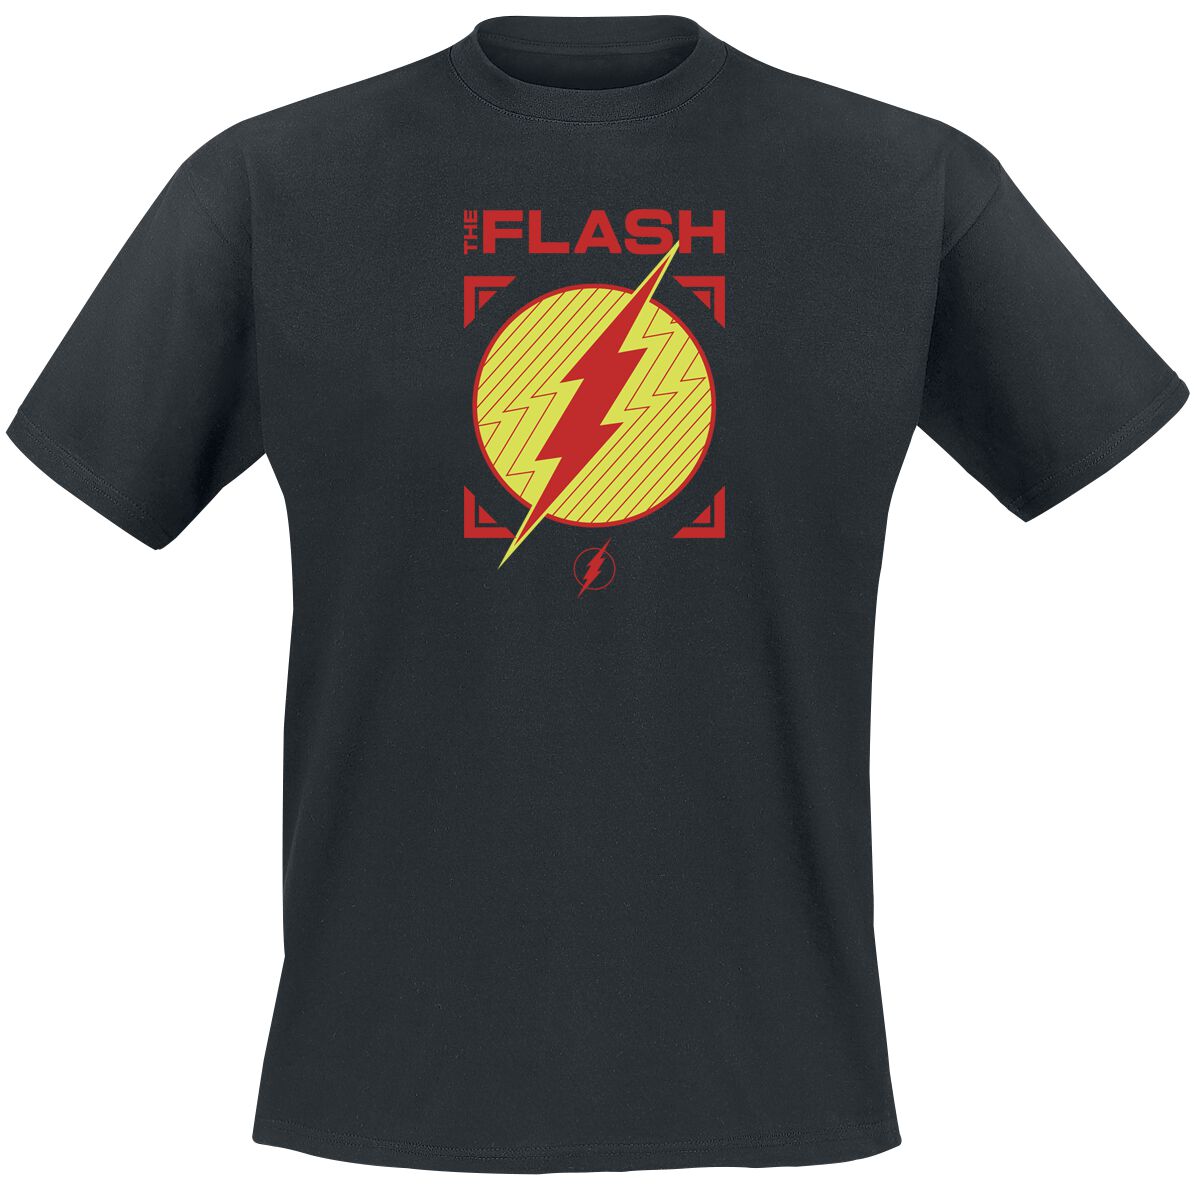 The Flash - DC Comics T-Shirt - Flash - Central City All Stars - S bis XXL - für Männer - Größe XL - schwarz  - EMP exklusives Merchandise!